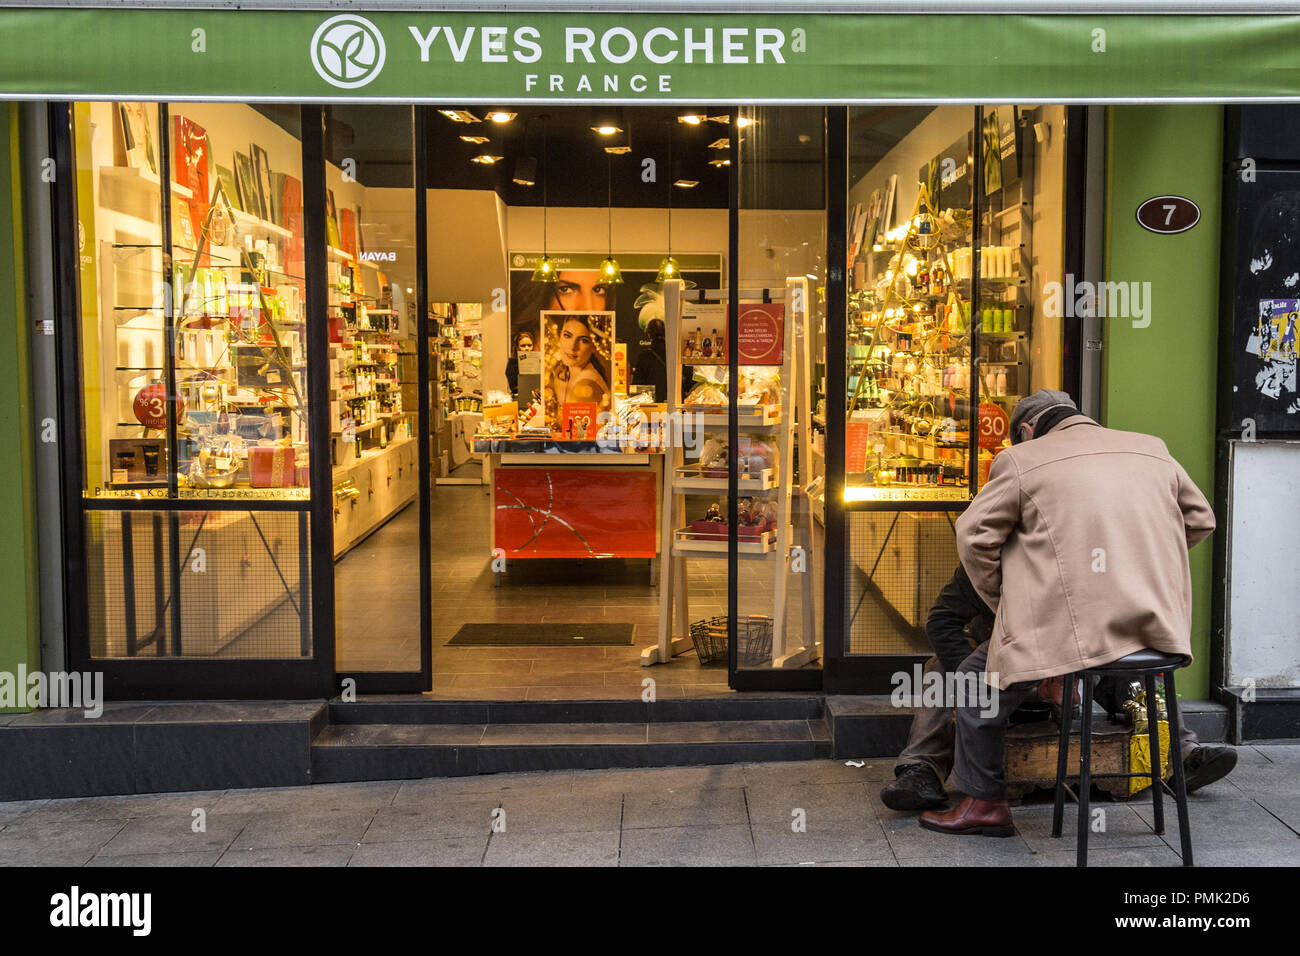 ISTANBUL, Türkei - 29 Dezember, 2015: Shoeshiner polieren Schuhe vor der lokalen Yves Rocher mit den Zeichen. Yves Rocher ist eine französische Cosmet Stockfoto